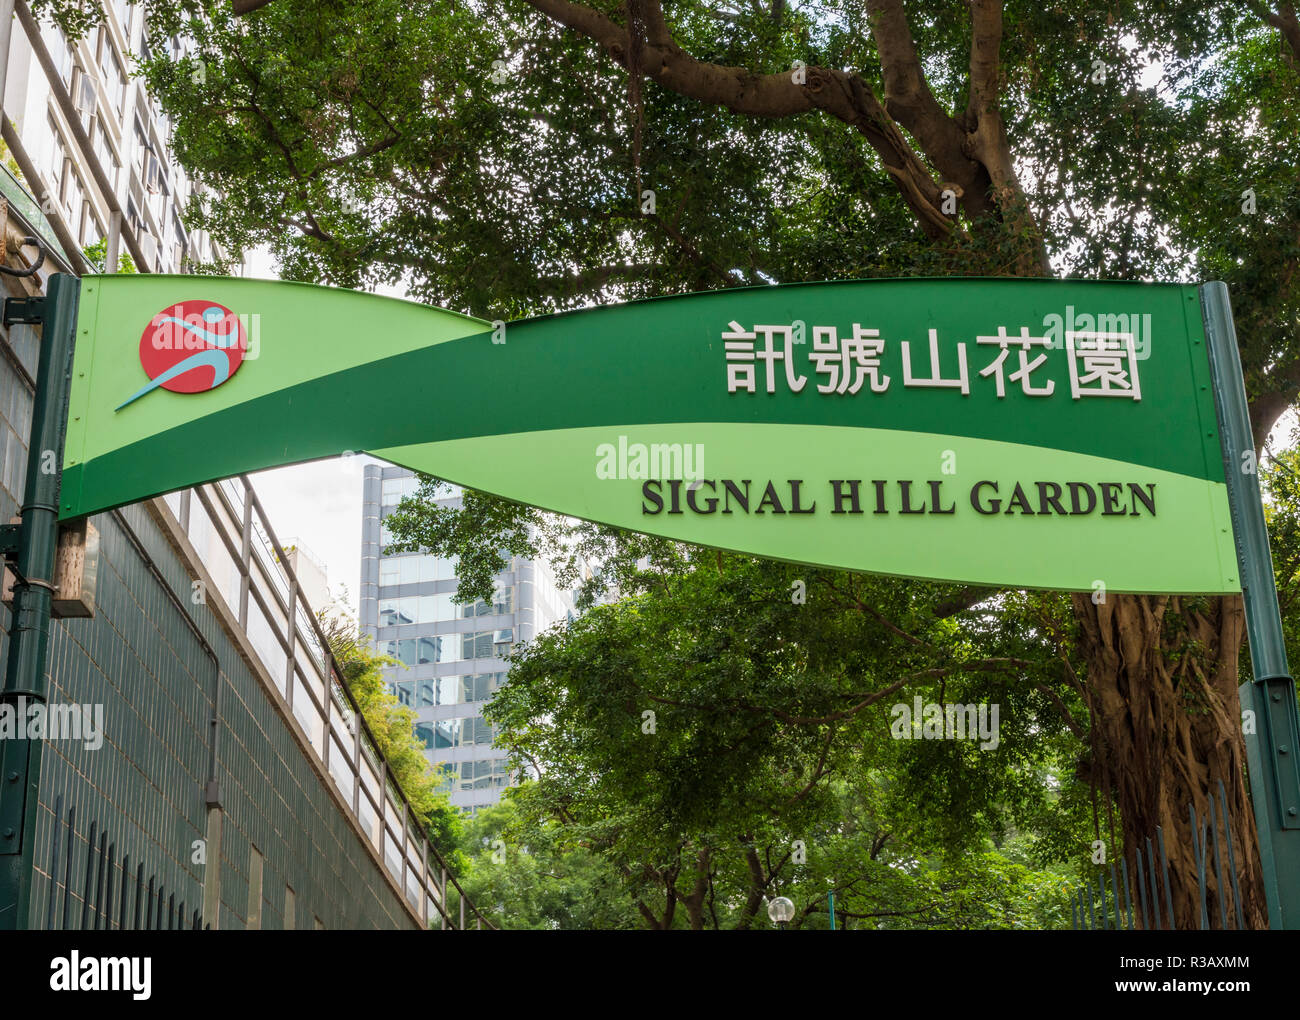 Signal Hill Garden sign at the entrance to the small historic park,Tsim Sha Tsui, Kowloon, Hong Kong Stock Photo